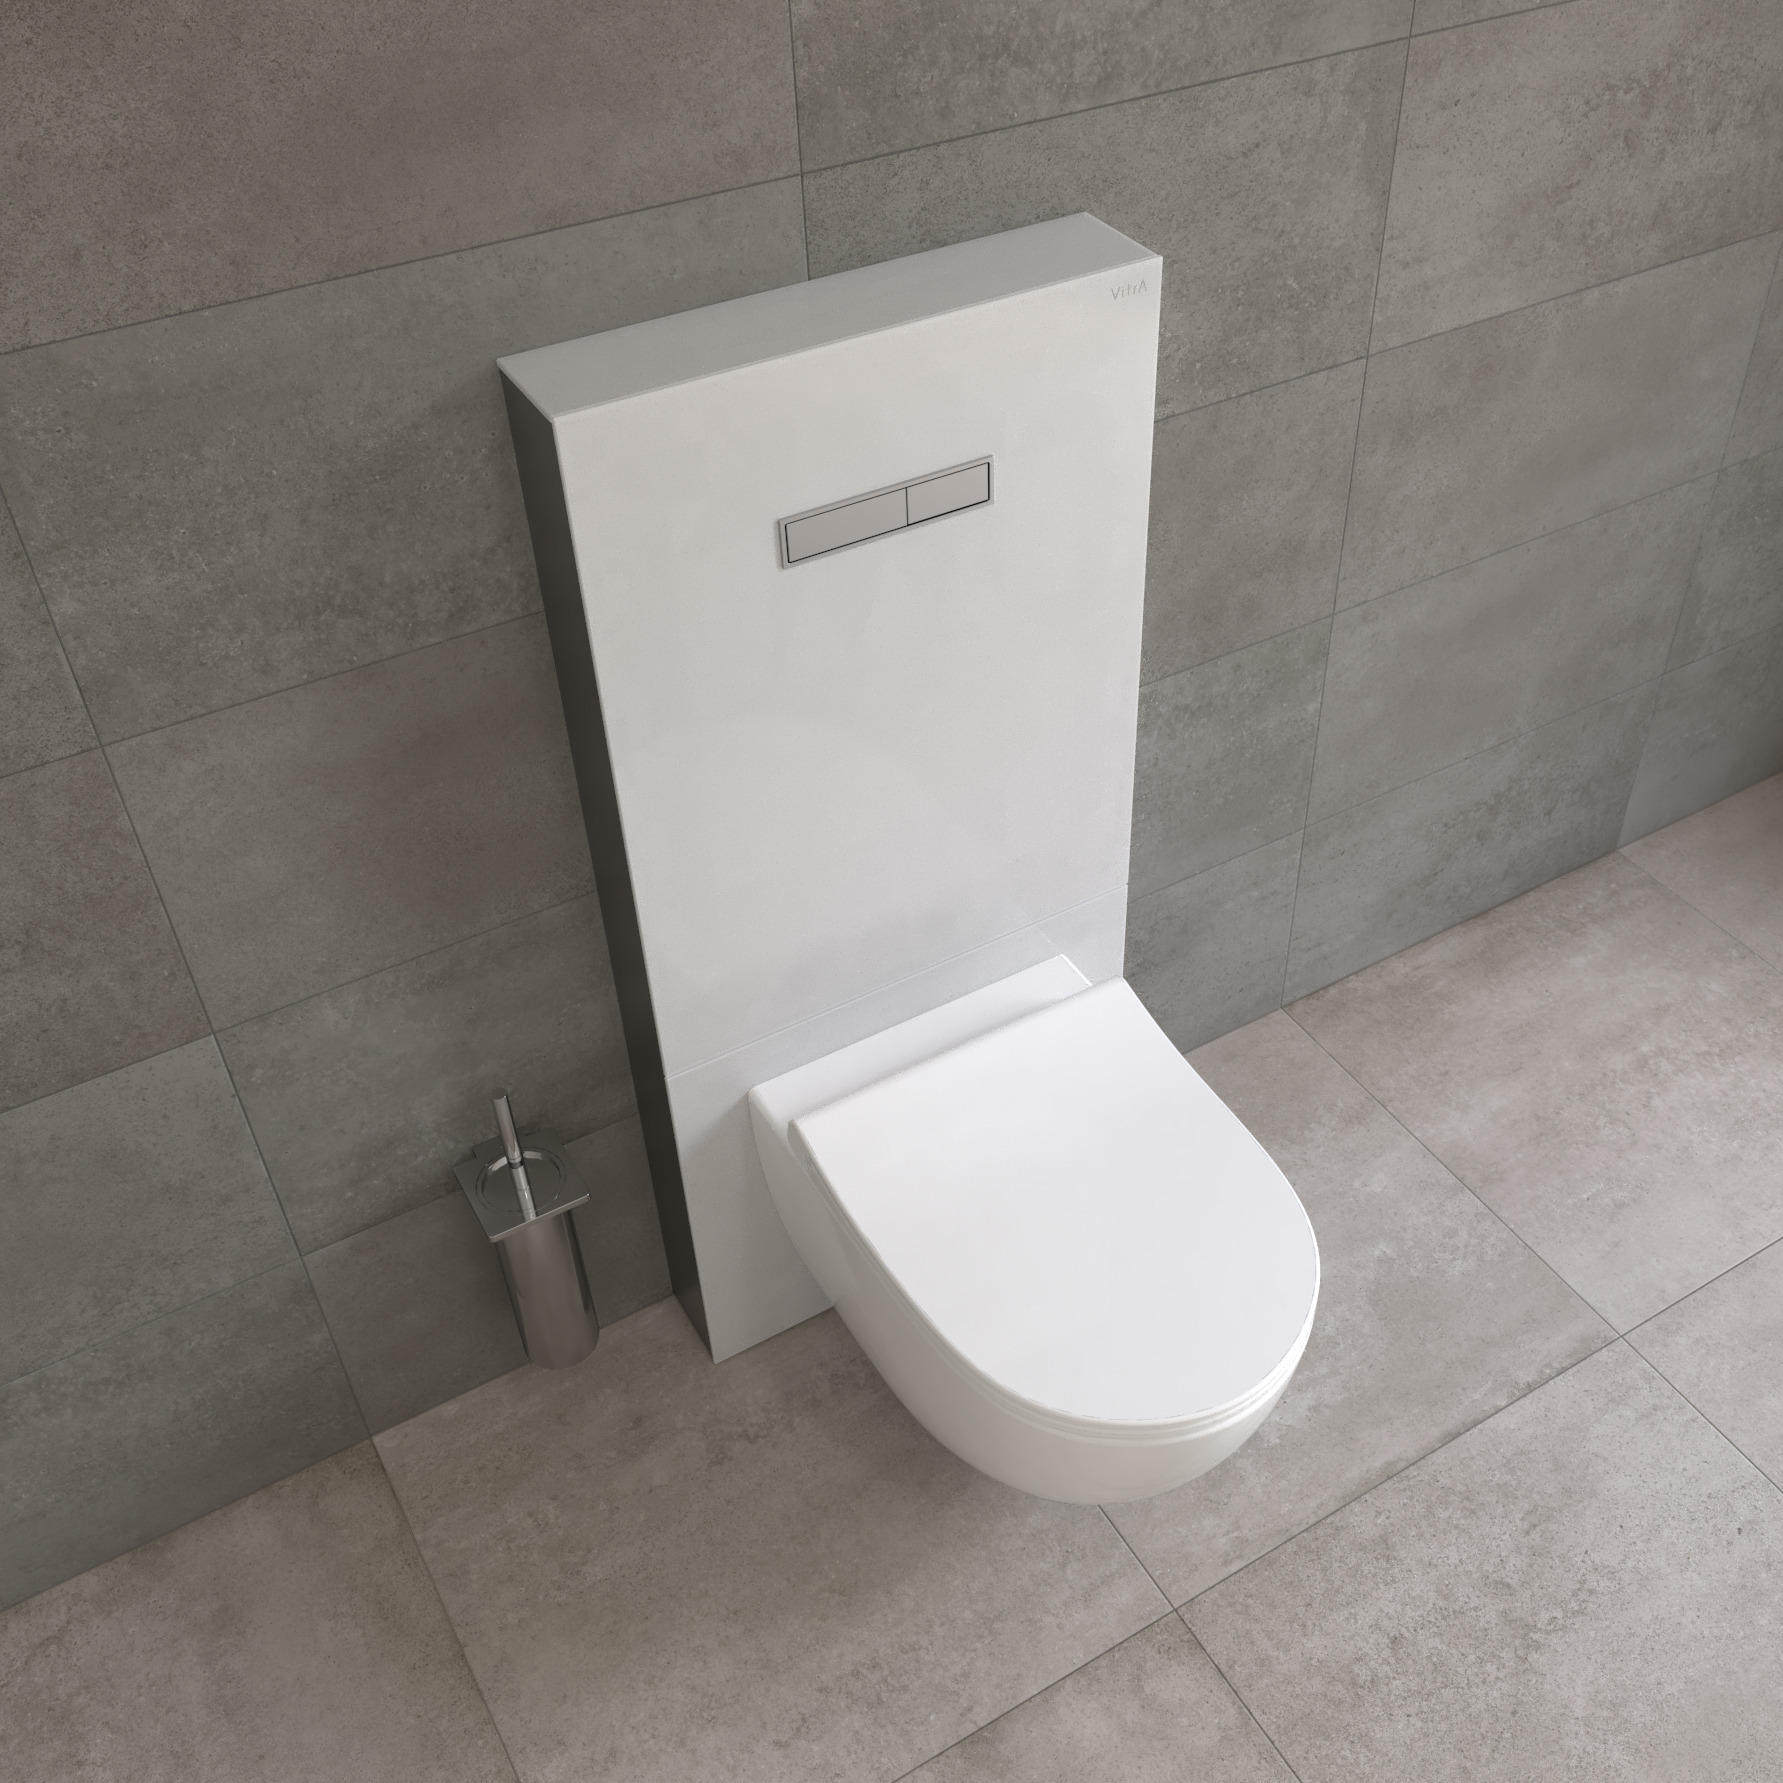 WC suspendu moderne avec bâti-support – Blanc – Choix de plaque de